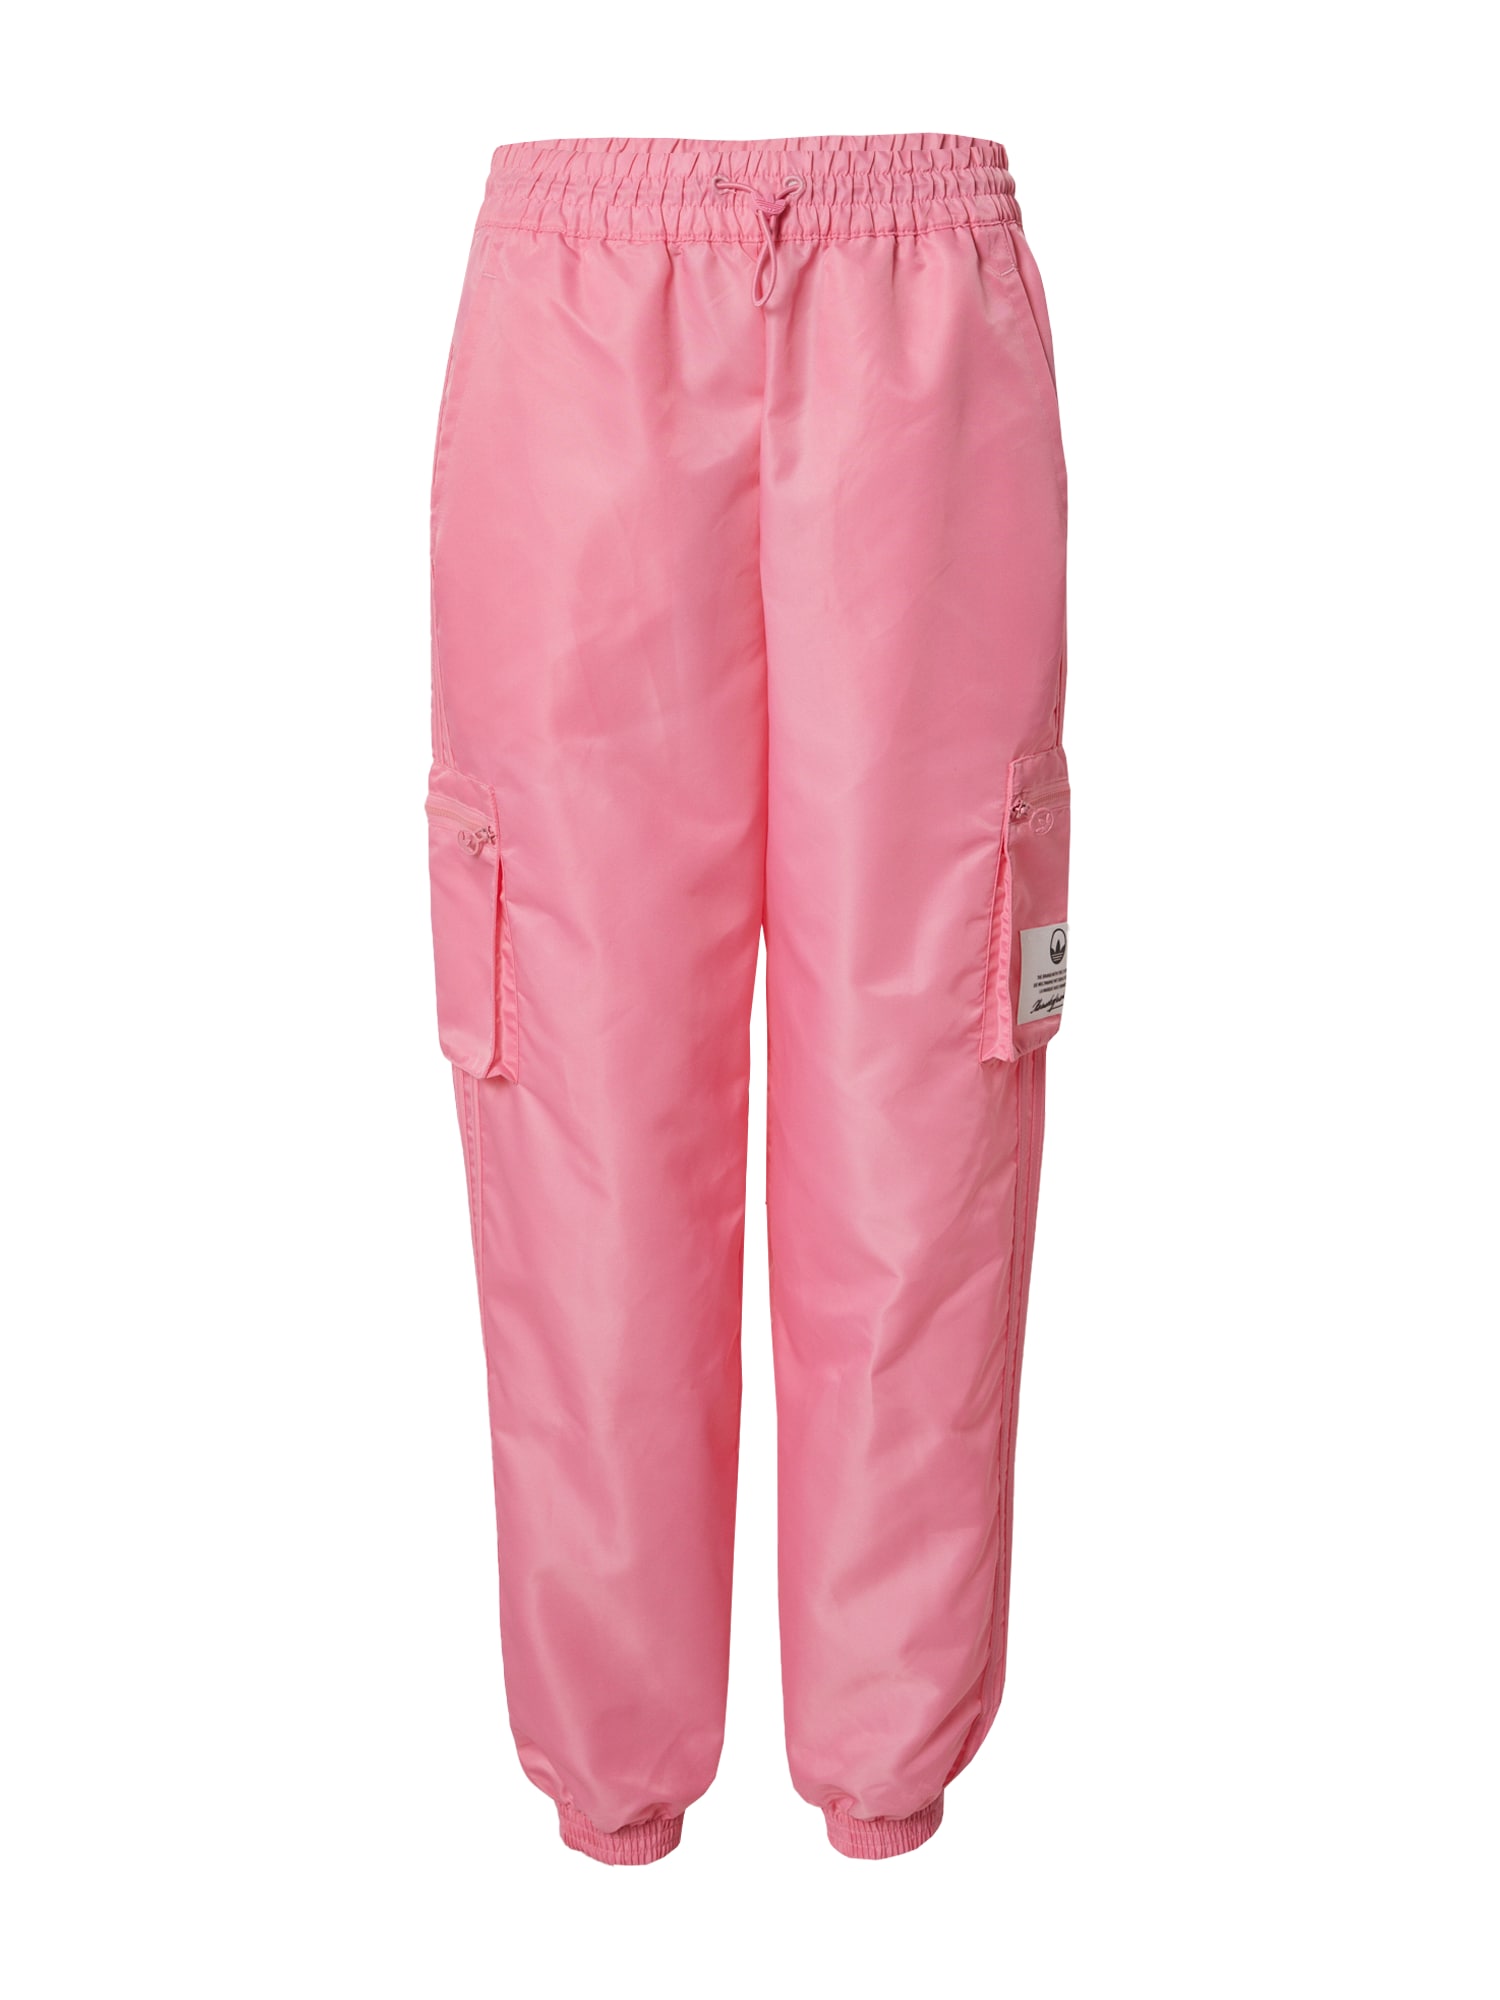 ADIDAS ORIGINALS Laisvo stiliaus kelnės 'Nylon Utility' rožinė